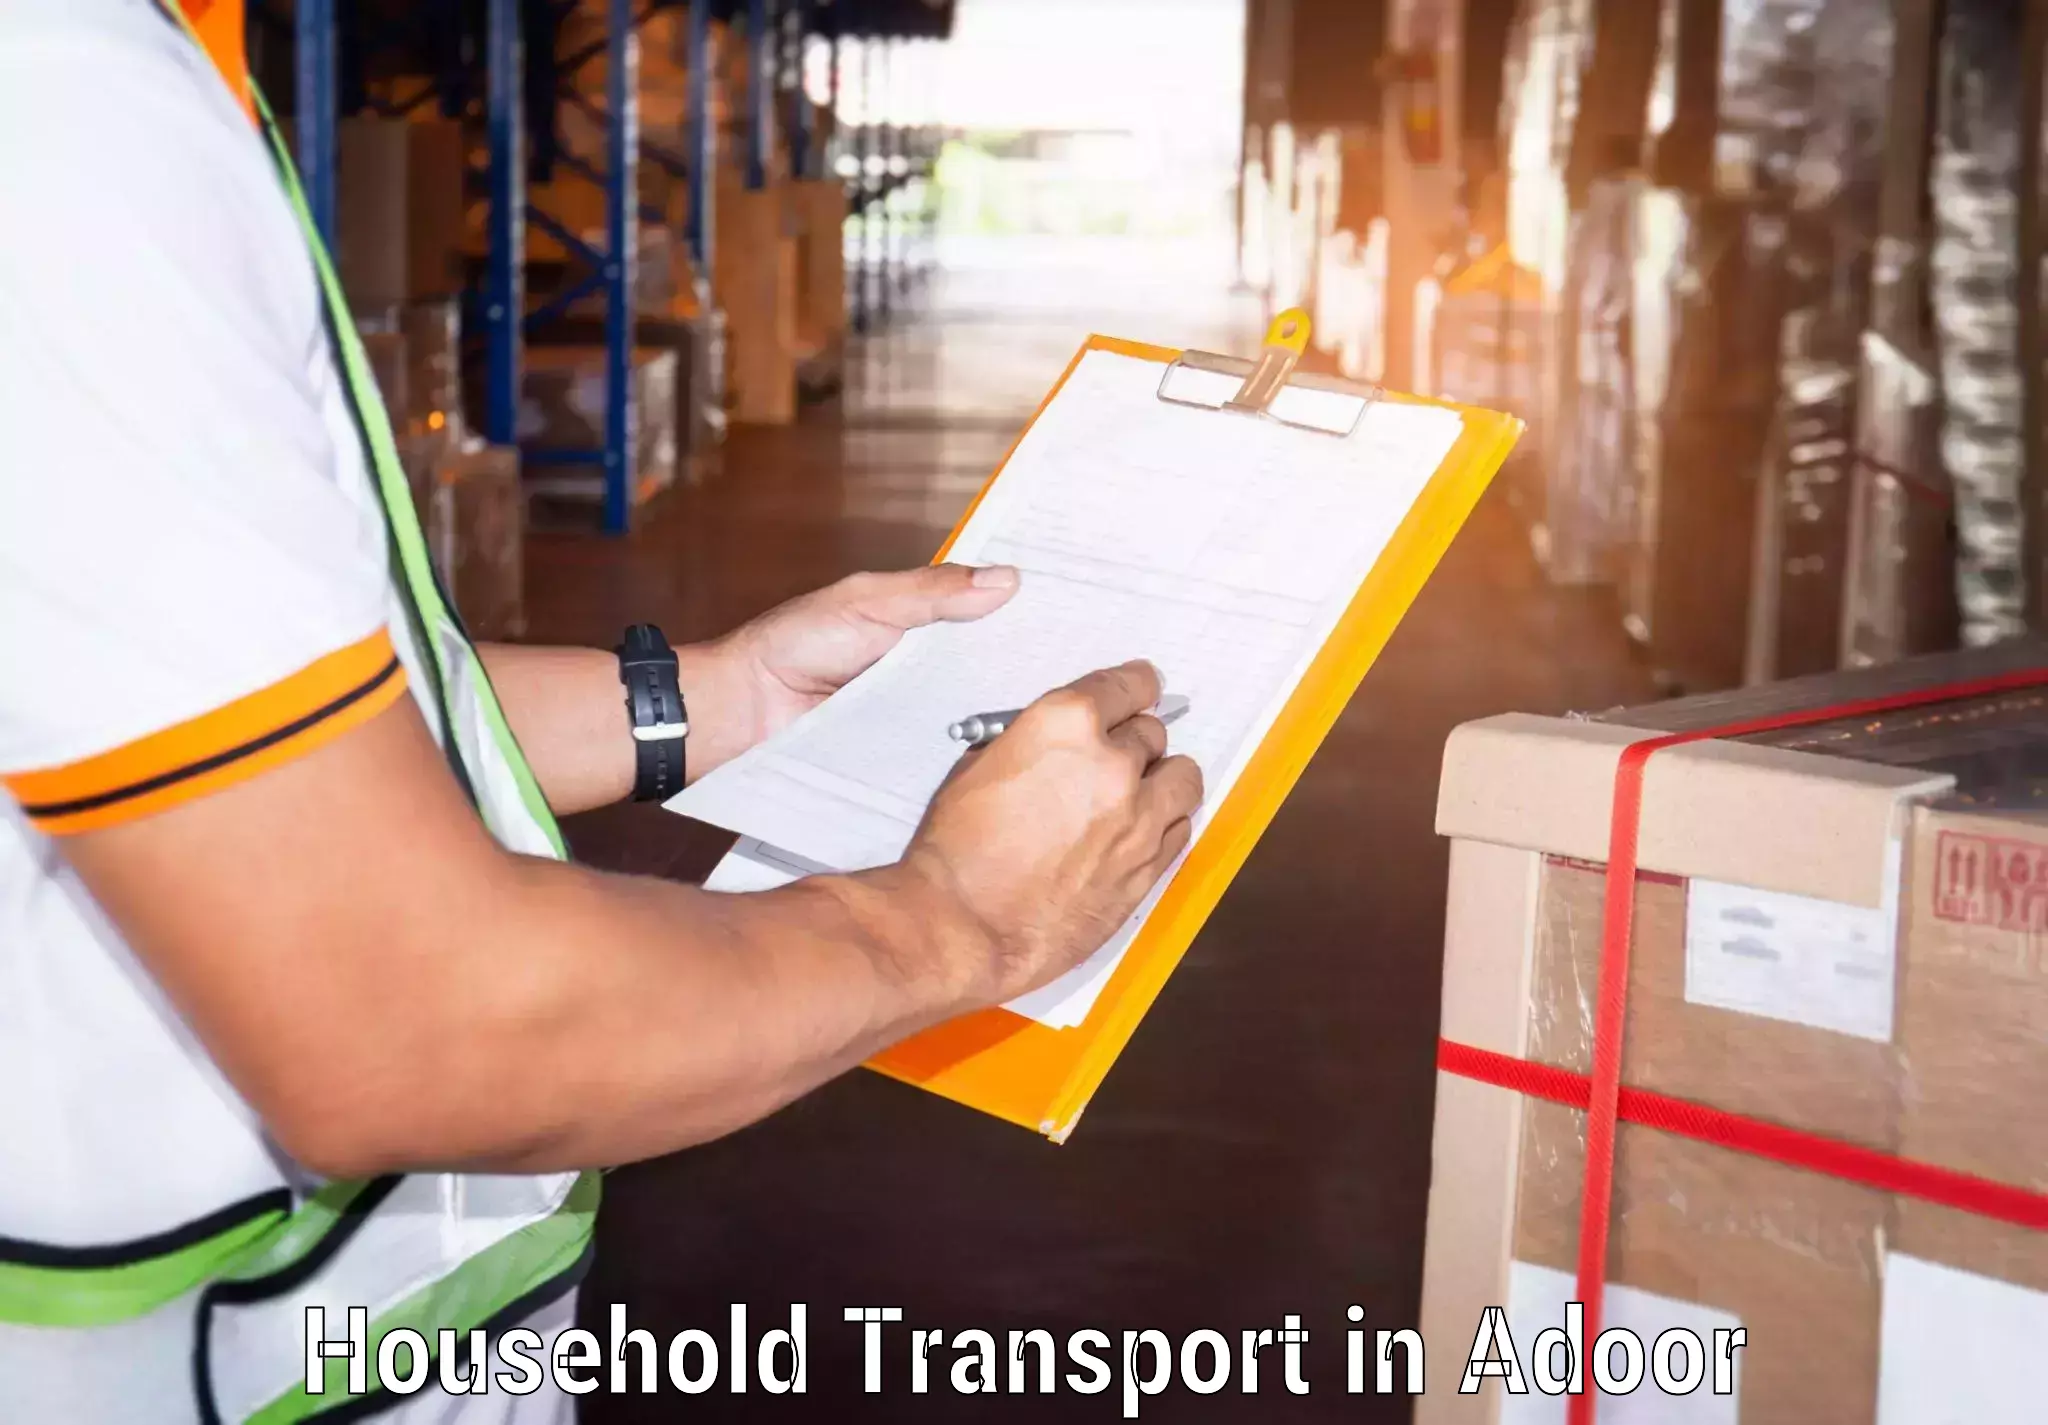 Household goods transport service in Adoor